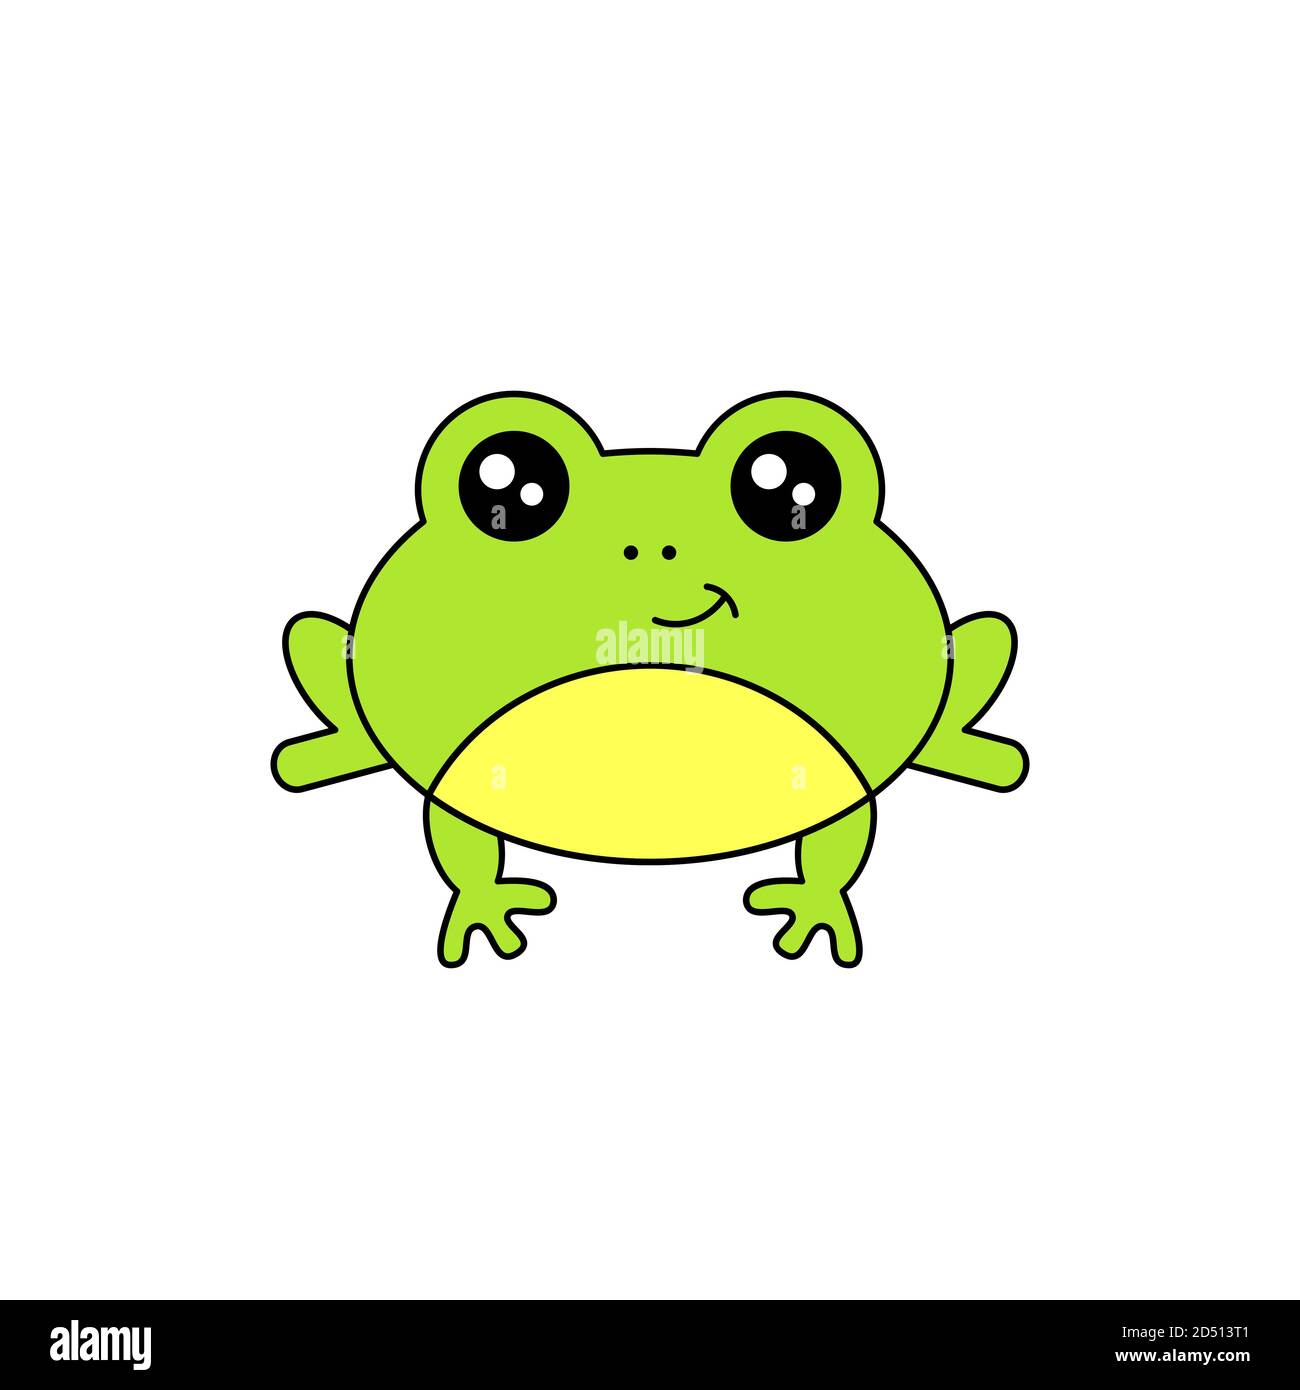 Niedlicher Frosch lächelt. Kawaii Stil Frosch Zeichnung. Baby Frosch suchen neugierig. Lustige minimalistische Zeichentrickfigur. Isoliert auf weißem Hintergrund. Vektor Stock Vektor